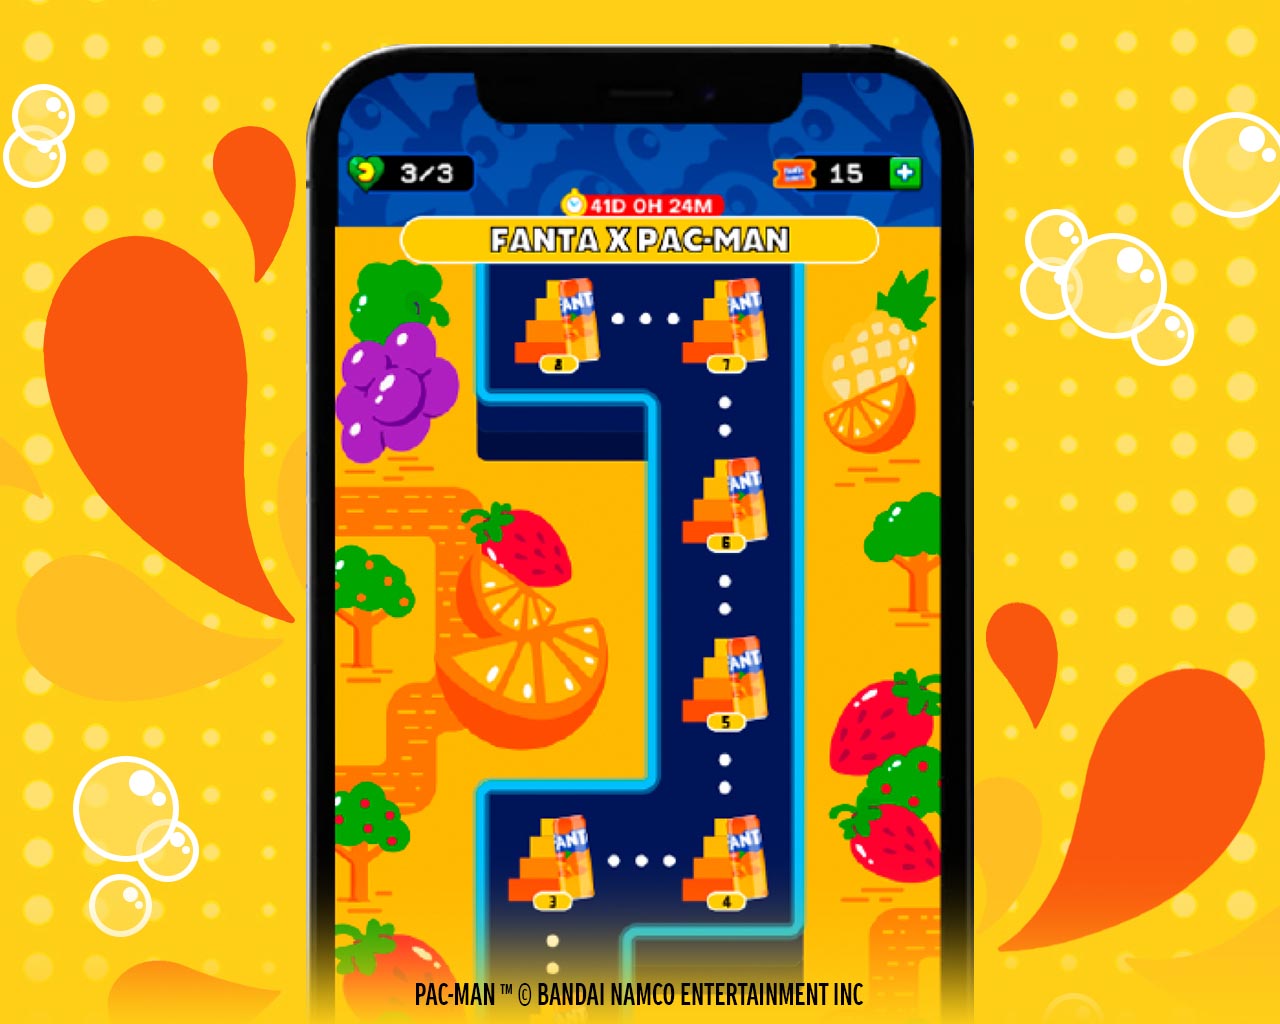 Interfaz del juego para celulares Android y I-Phone de Fanta Pac-Man que muestra un nivel del laberinto con frutas y los fantasmas de colores.